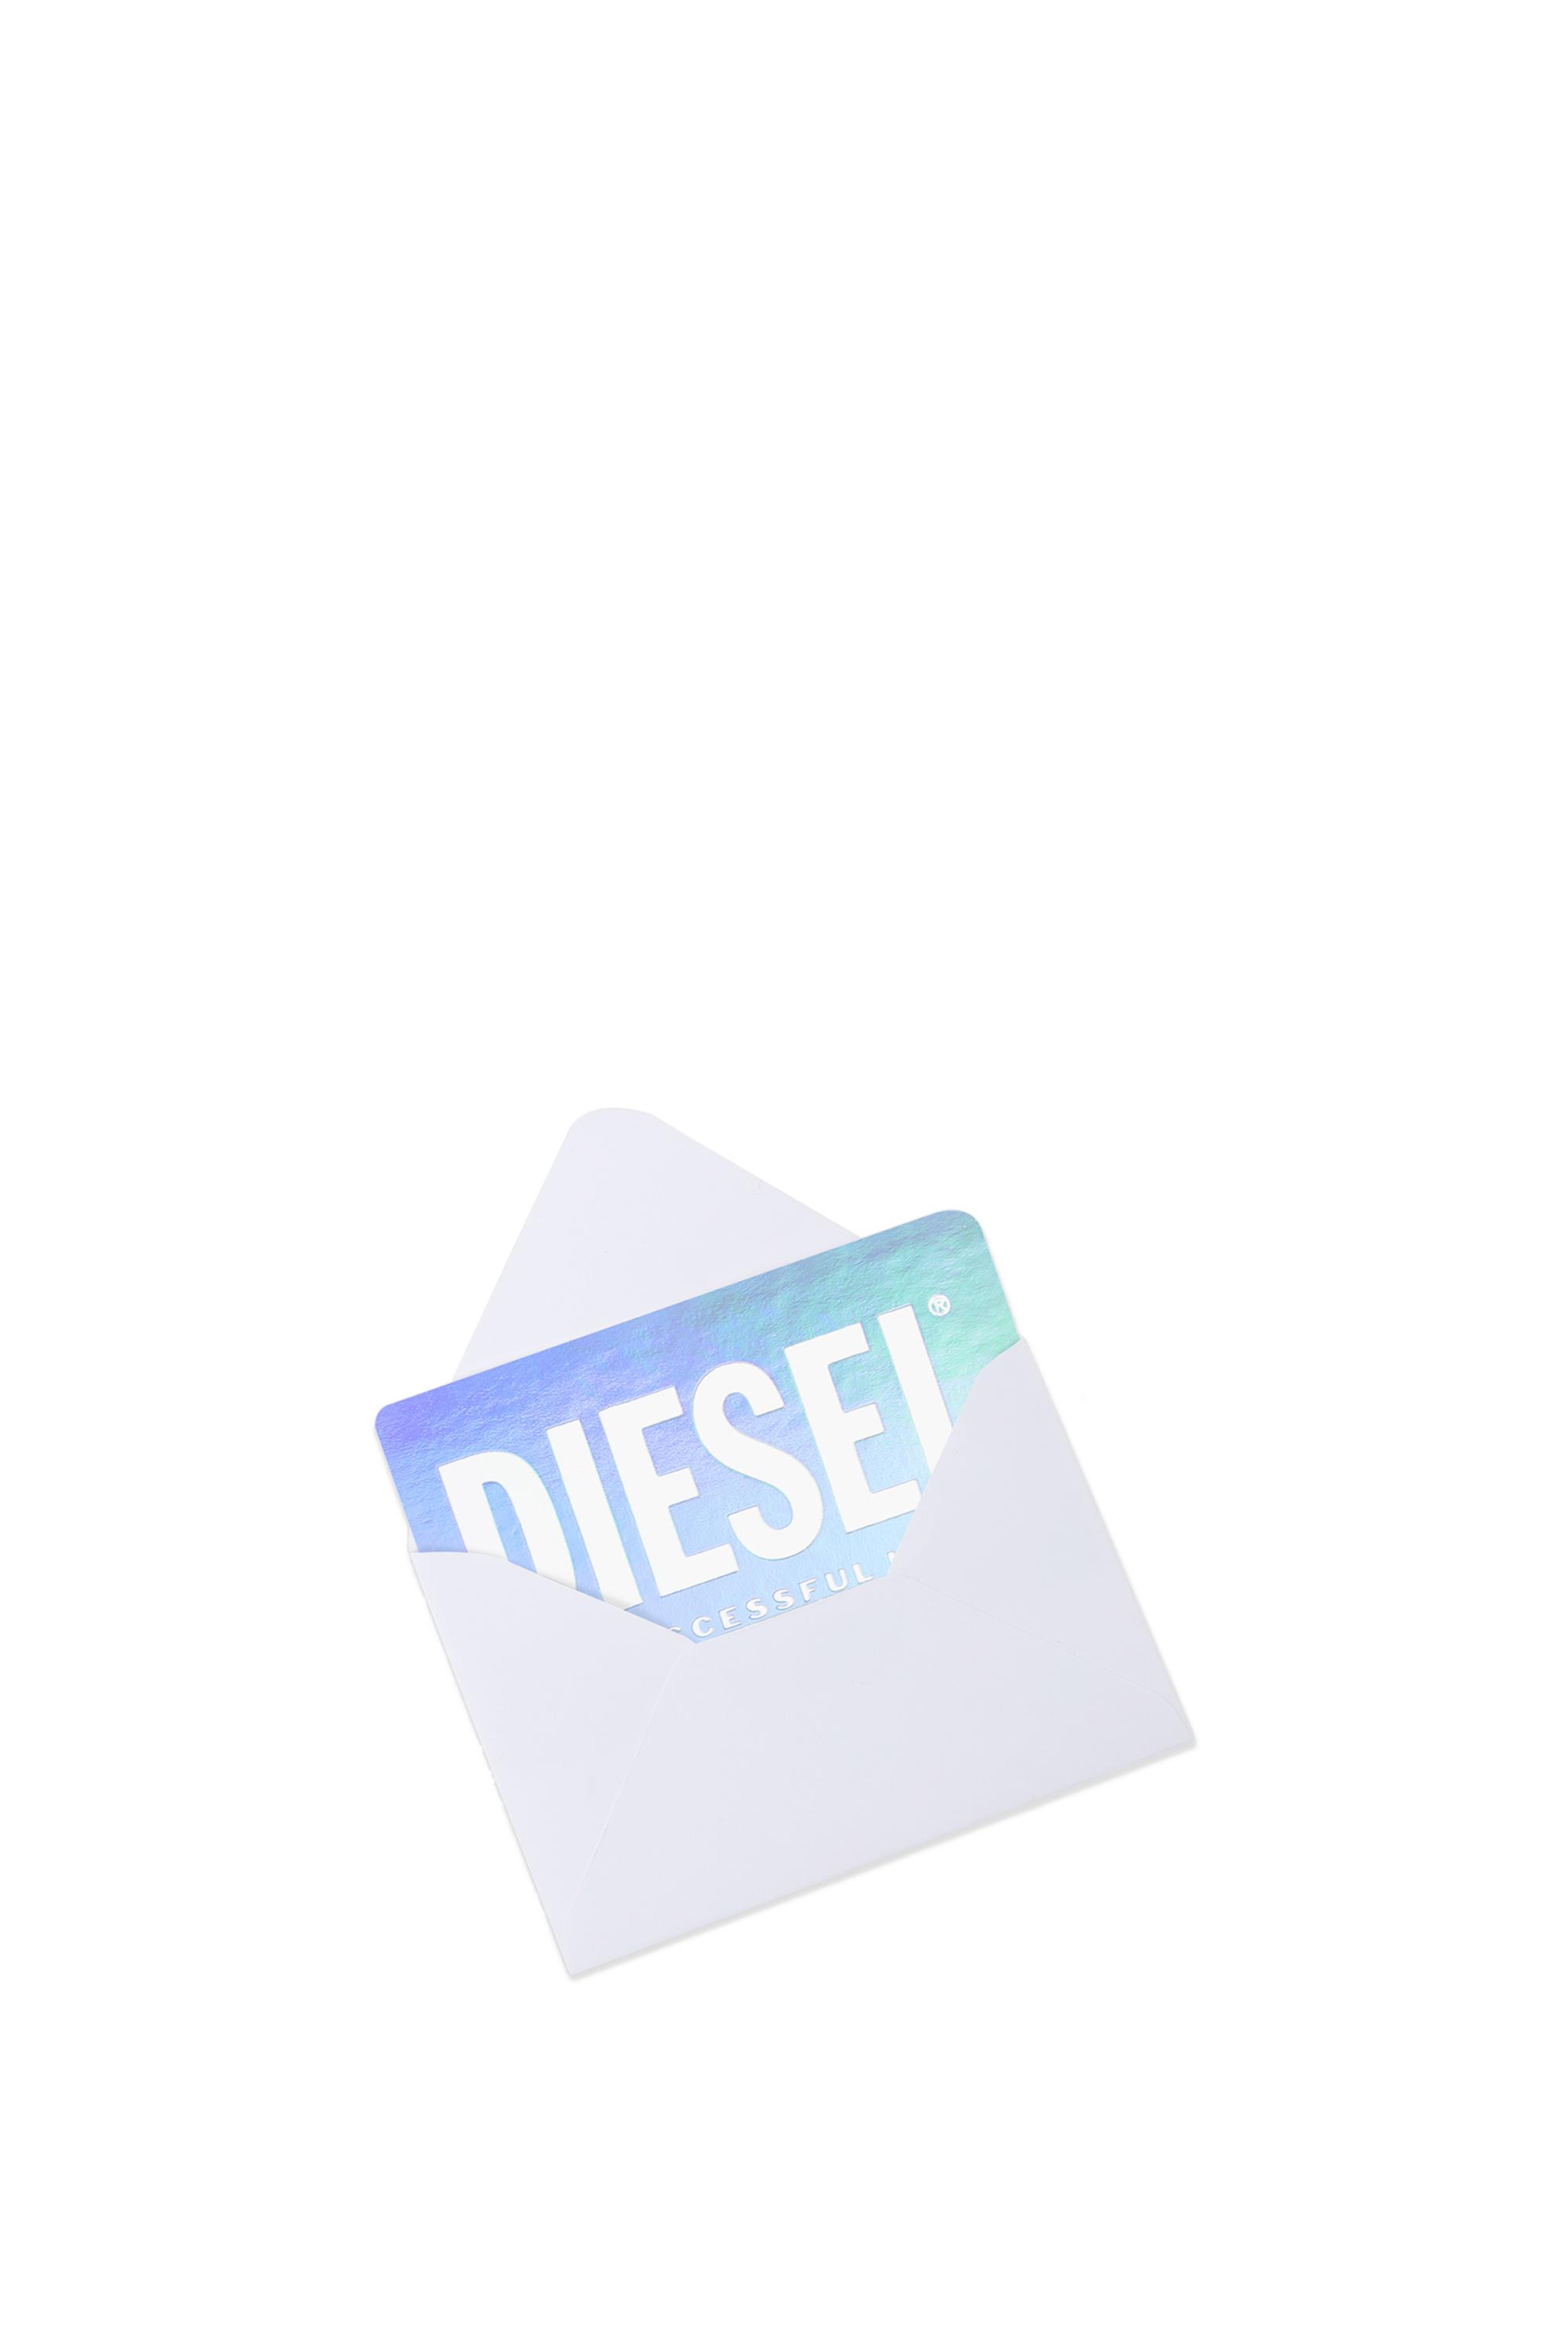 Diesel - Gift card, Weisse - Image 3